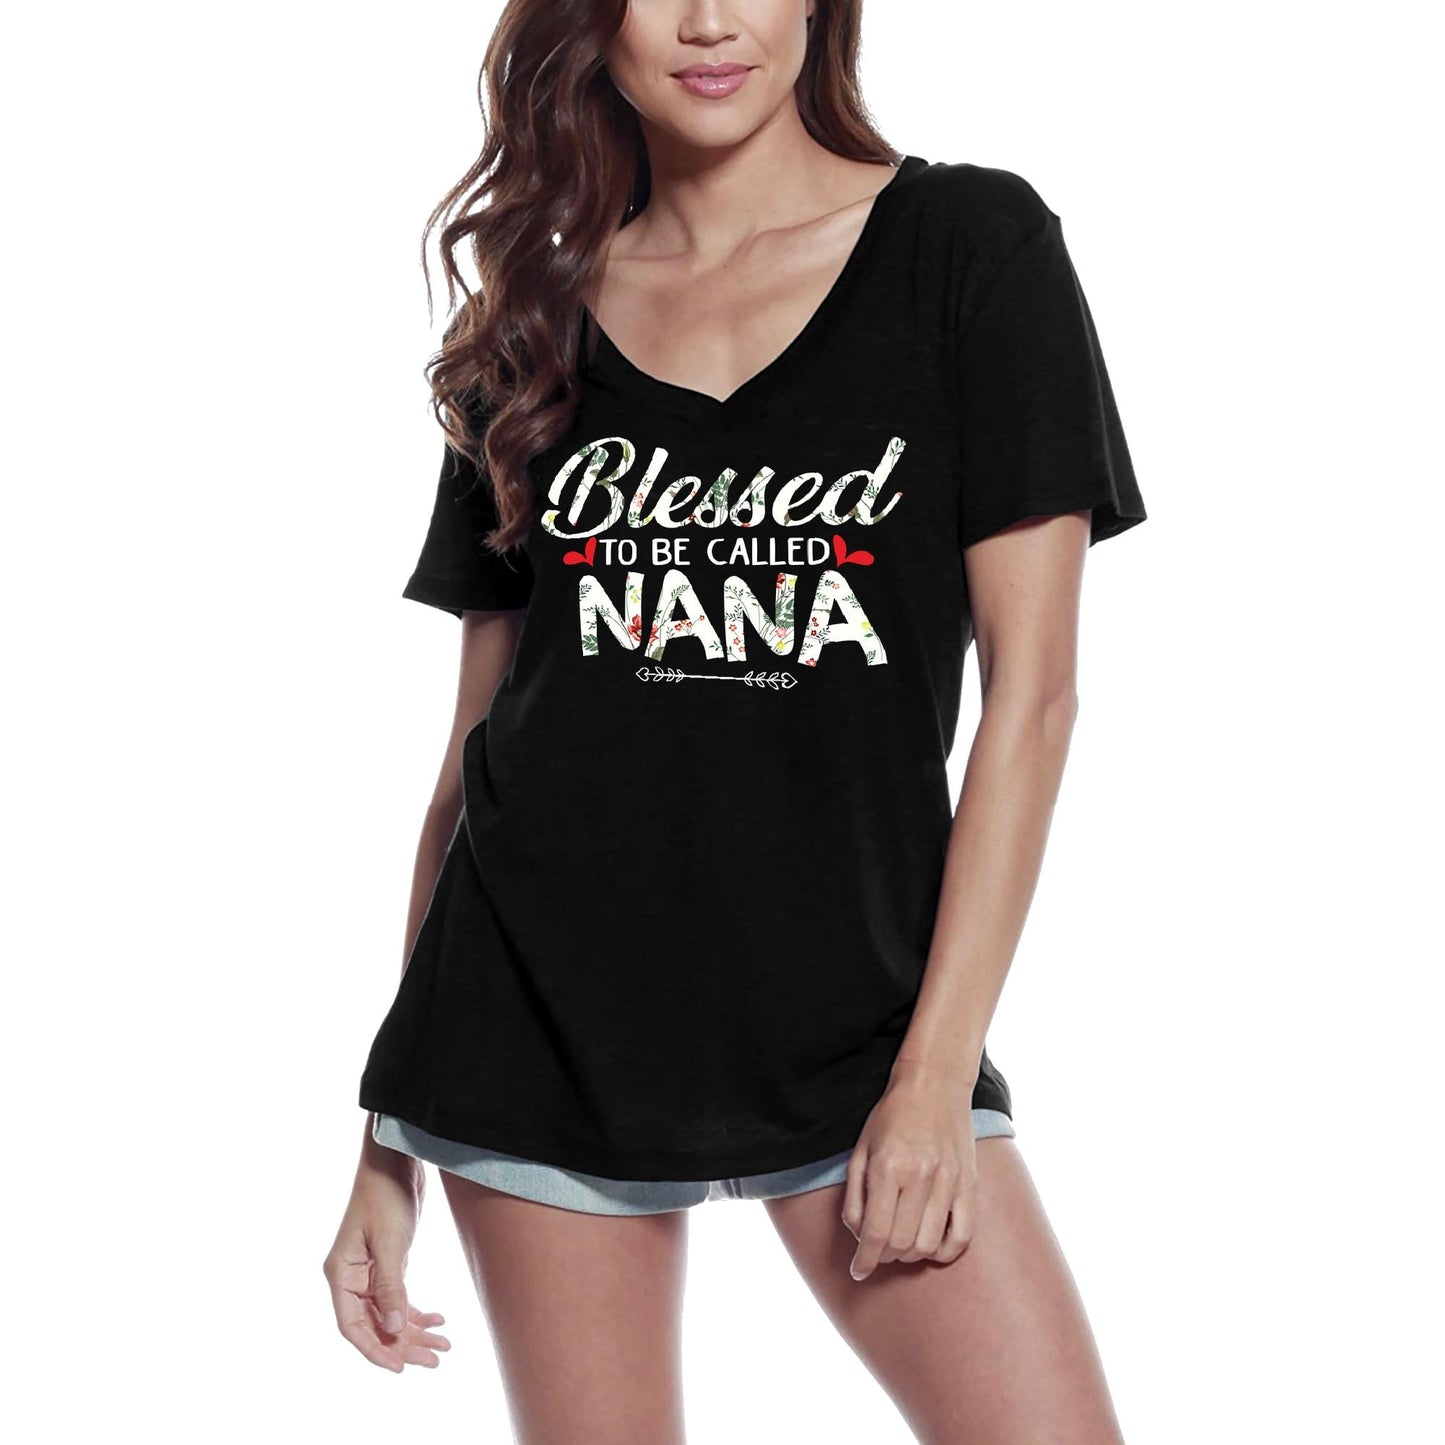 ULTRABASIC Women's V-Neck T-Shirt Blessed to be Called Nana - Gram Granny Grandmother Tee Shirt